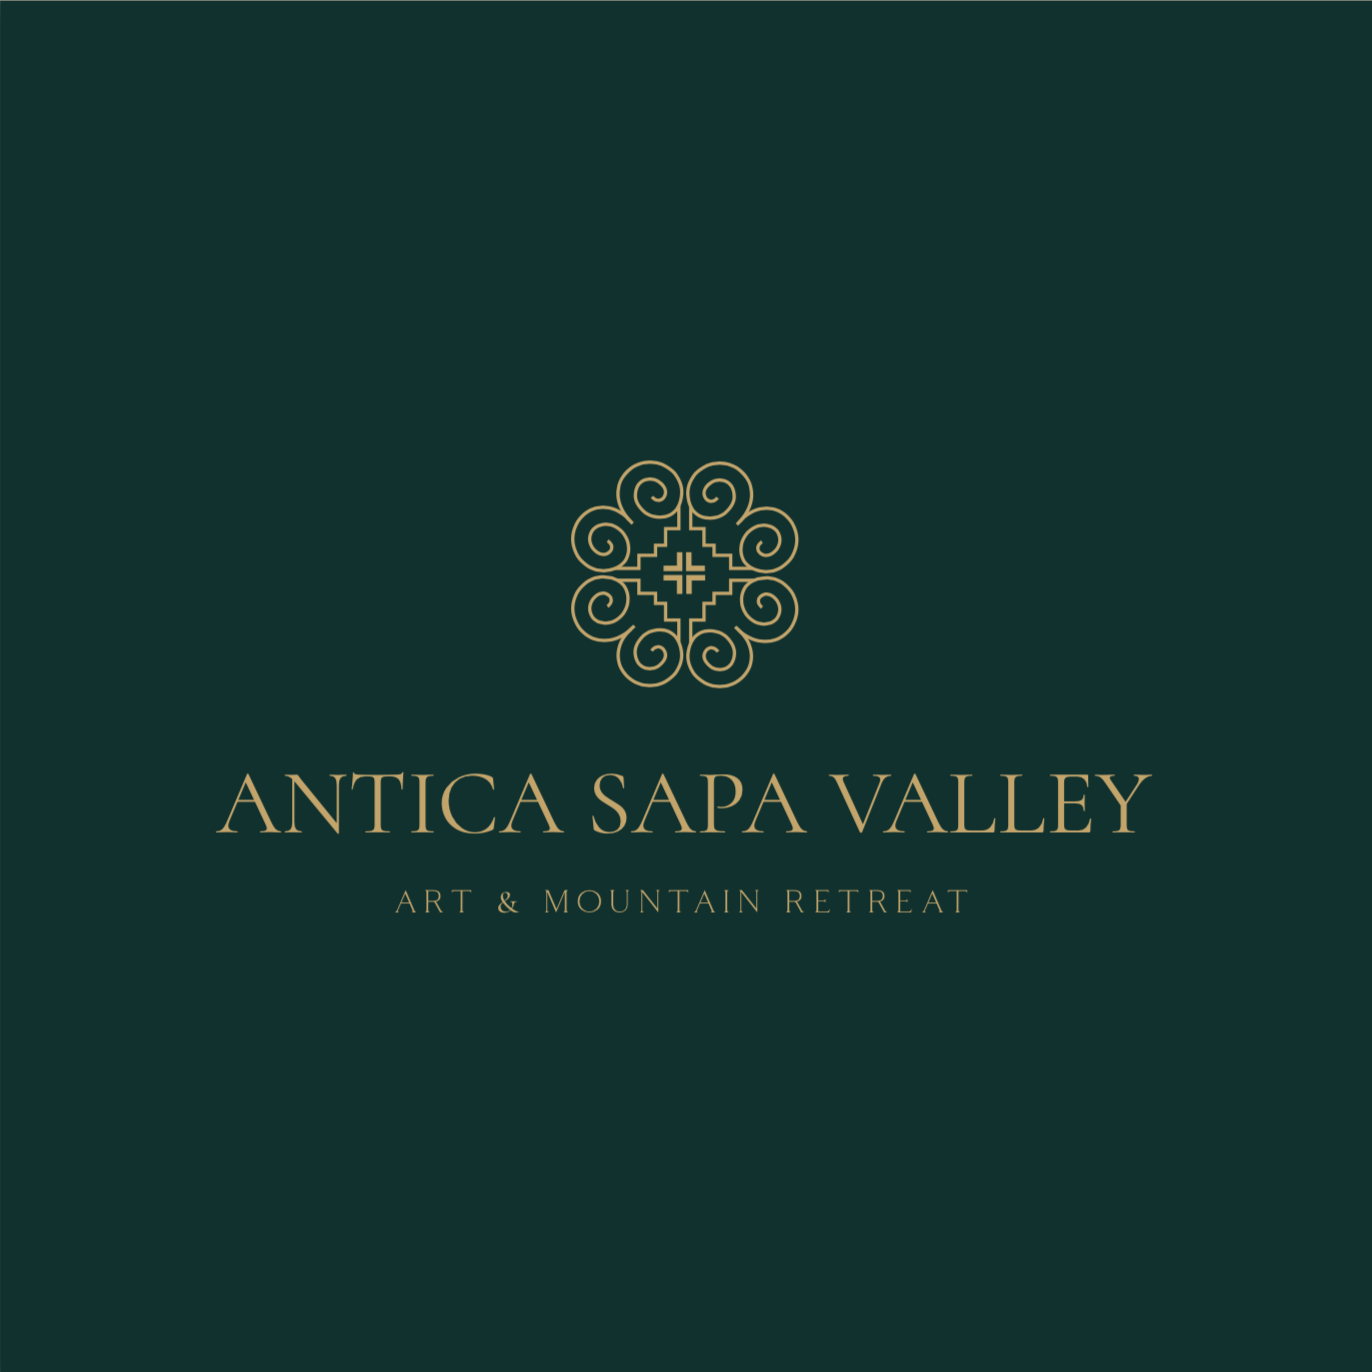 Antica Sapa Valley Resort